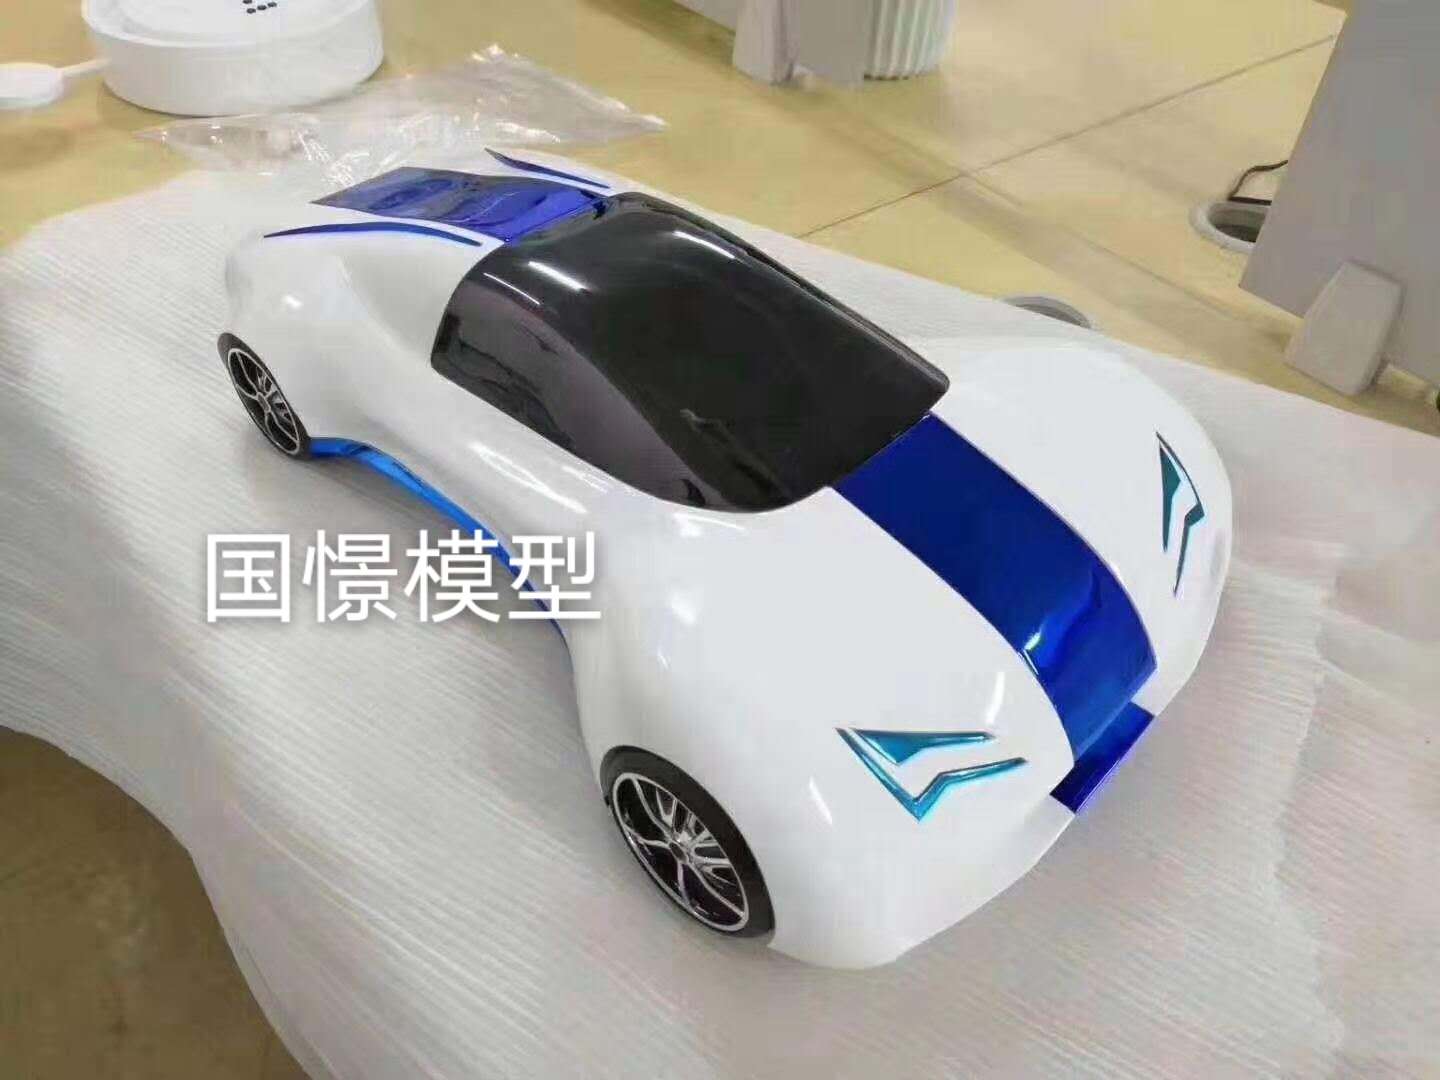 乐平县车辆模型